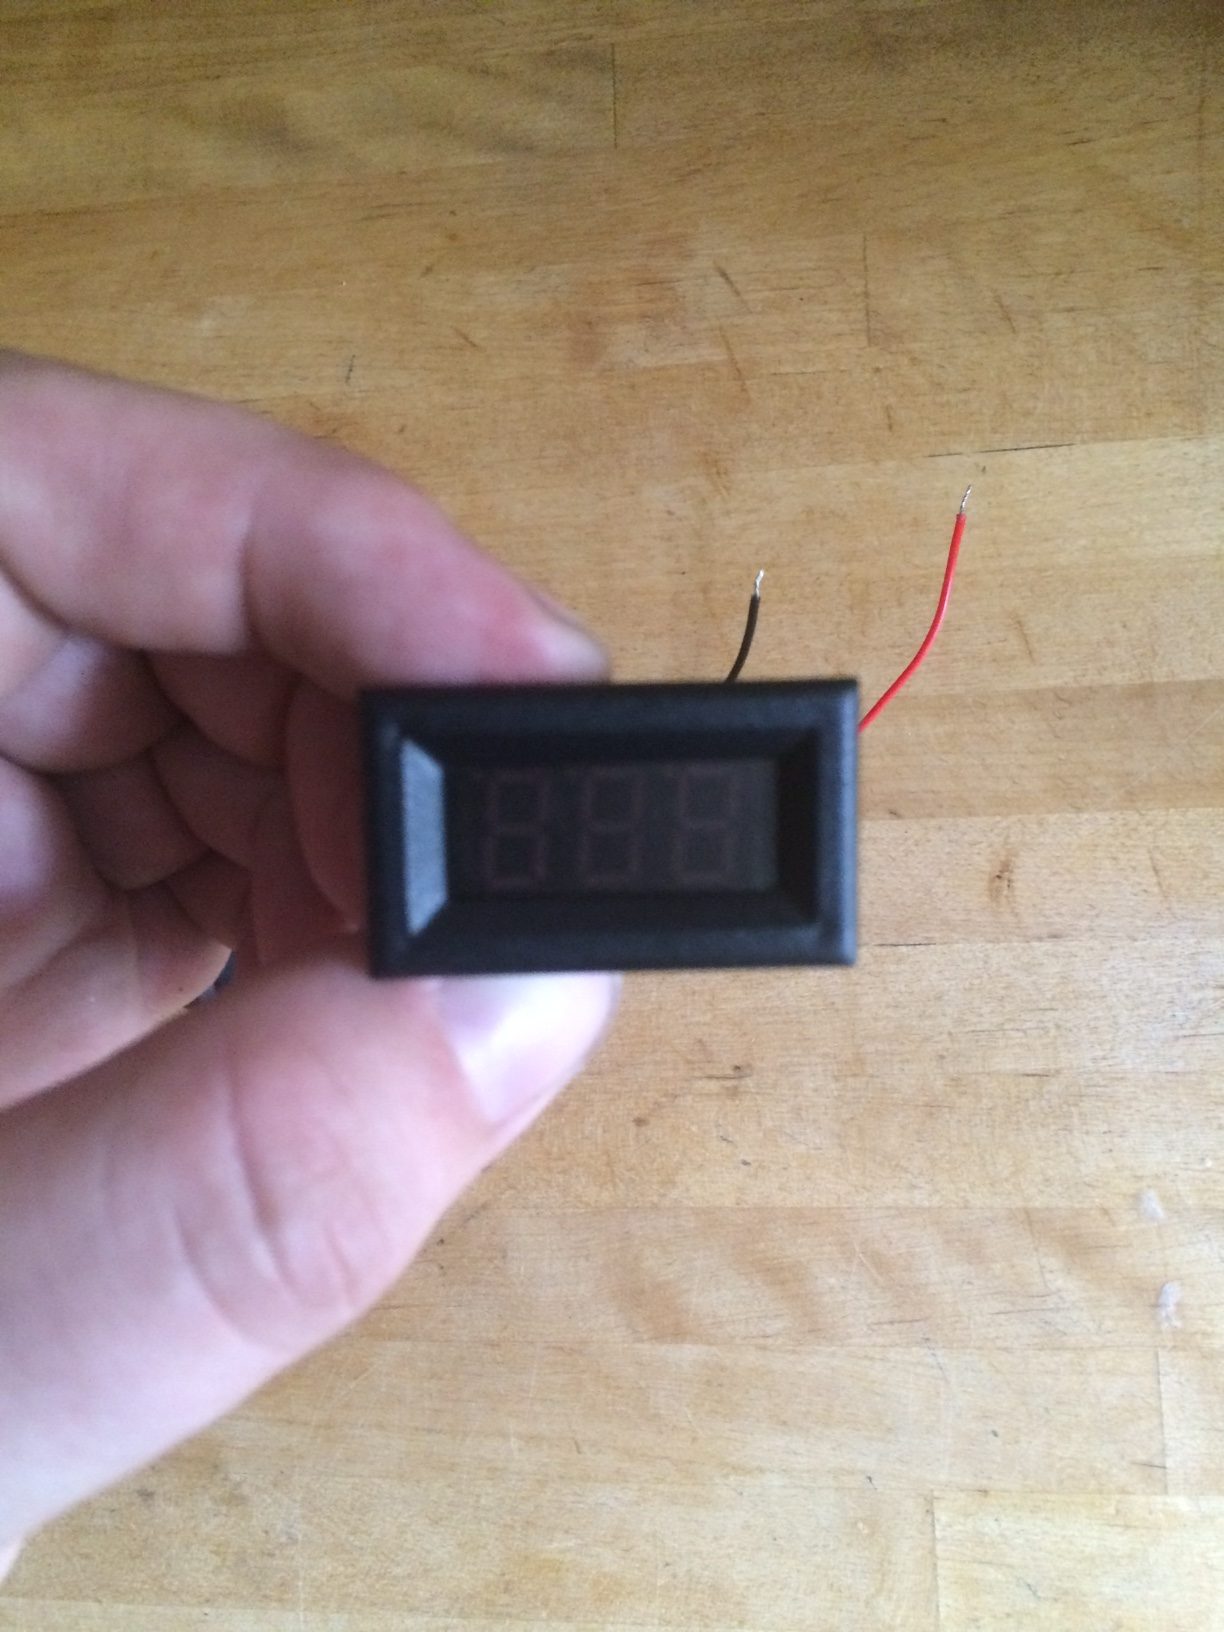 T4 . Voltmeter adjustment - voltmeter front